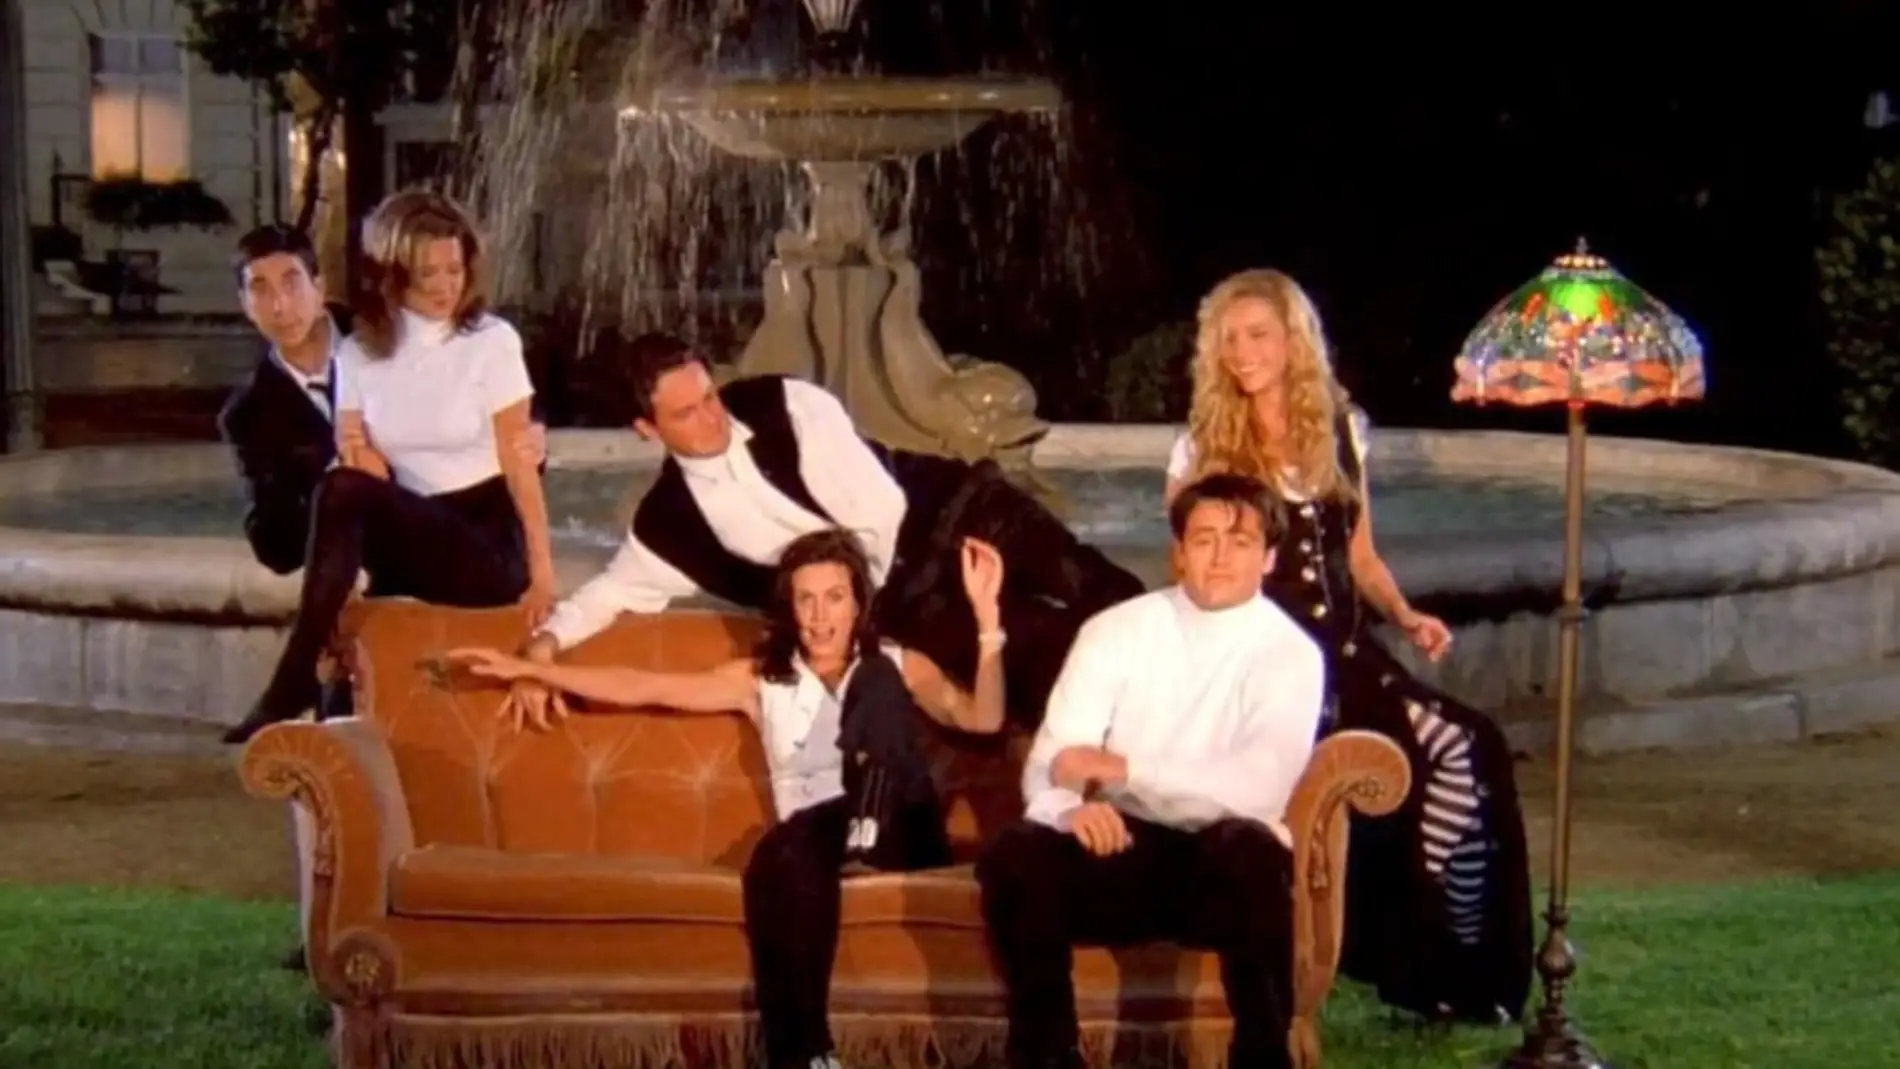 La reunión de 'Friends' confirma con una imagen que ha terminado el rodaje  ¡y volverán a la mítica fuente!